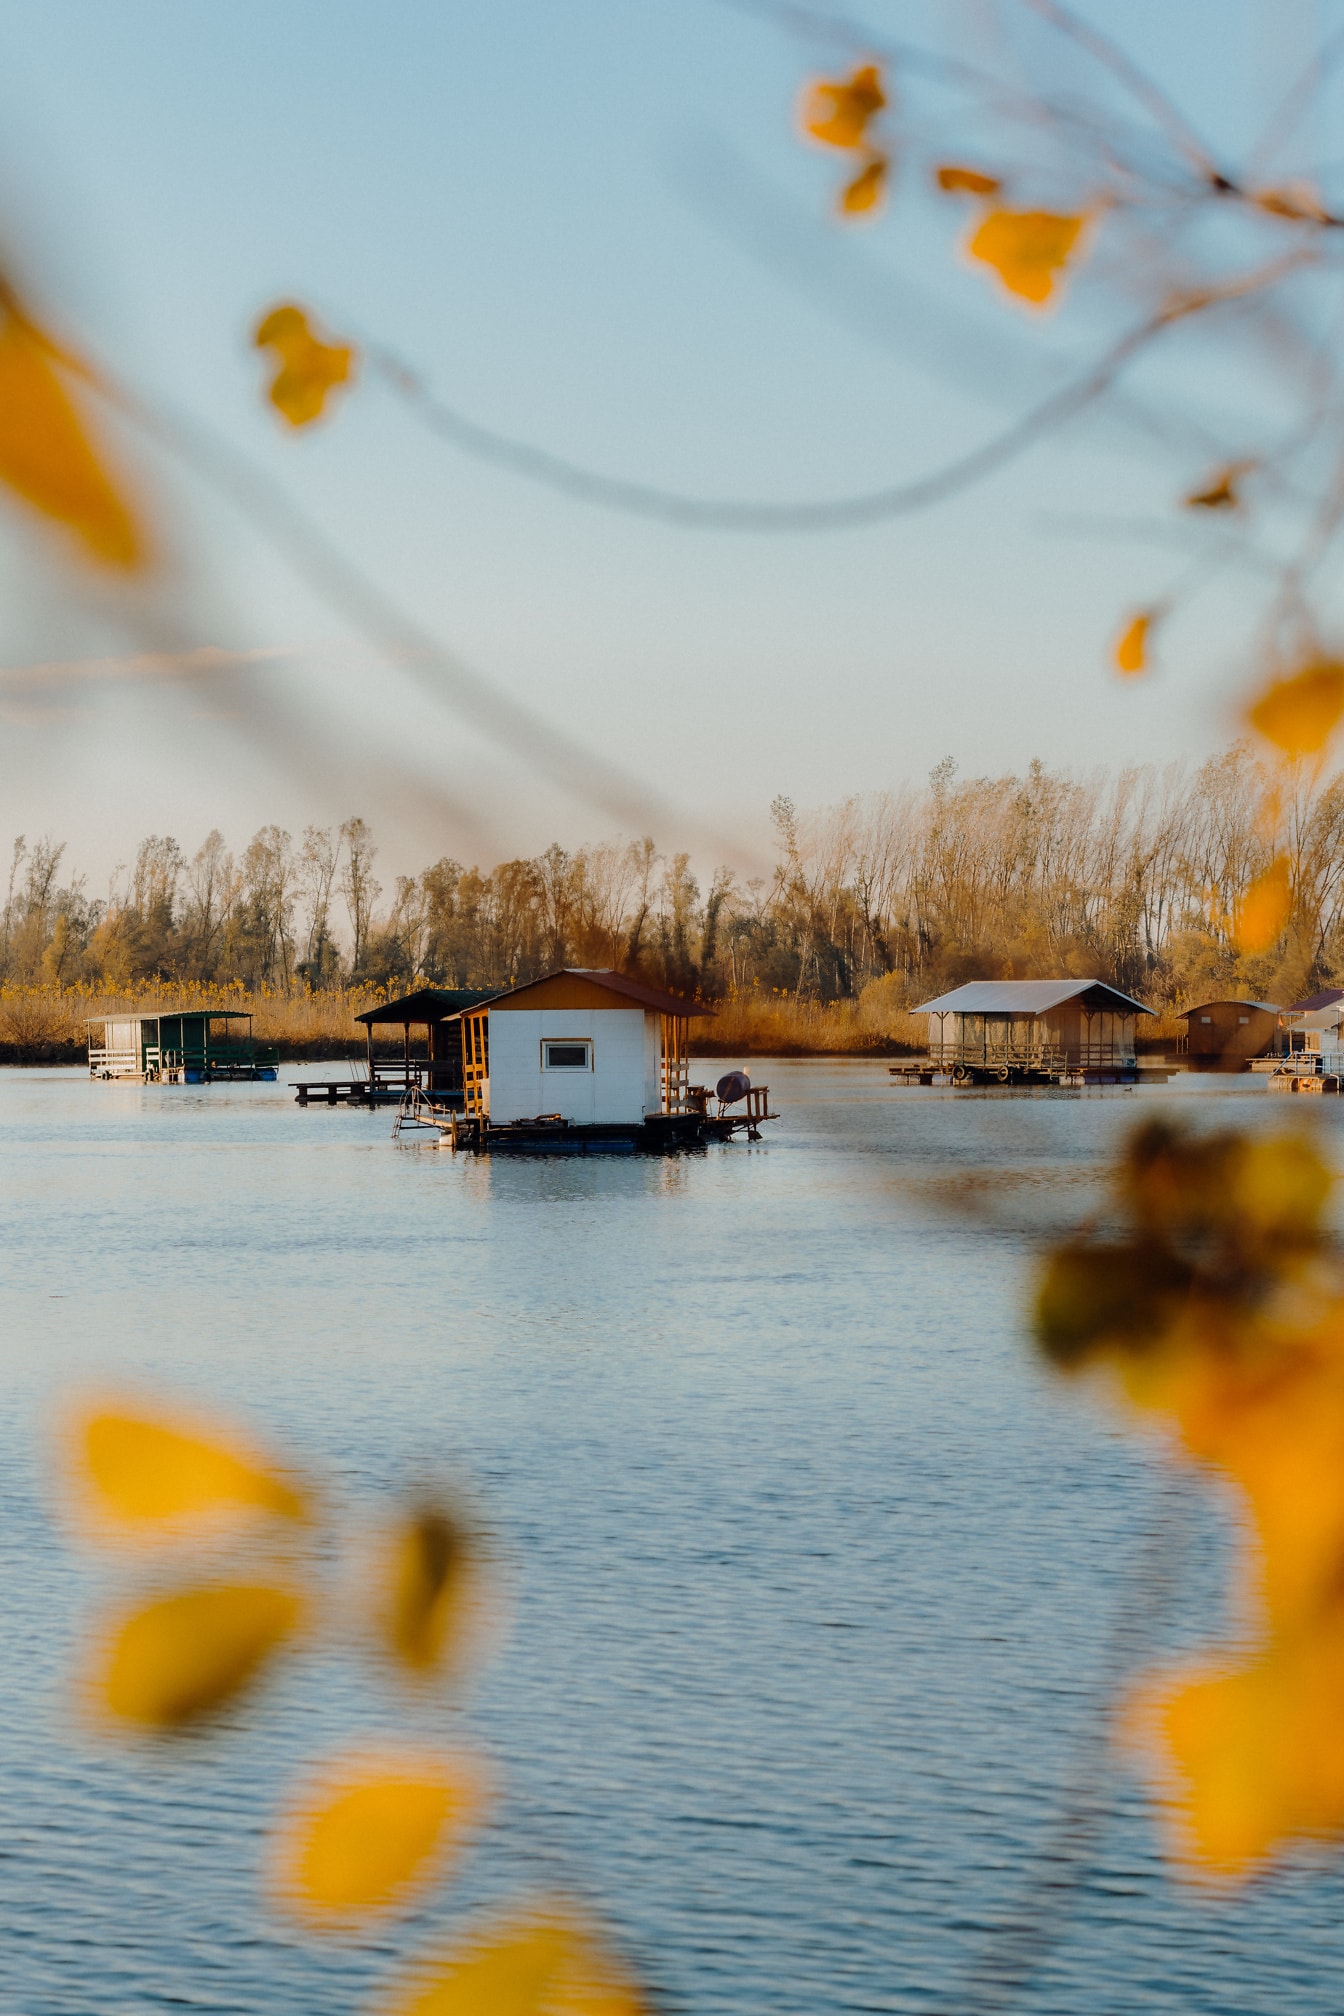 Casas de recreo flotantes en un lago Tikvara